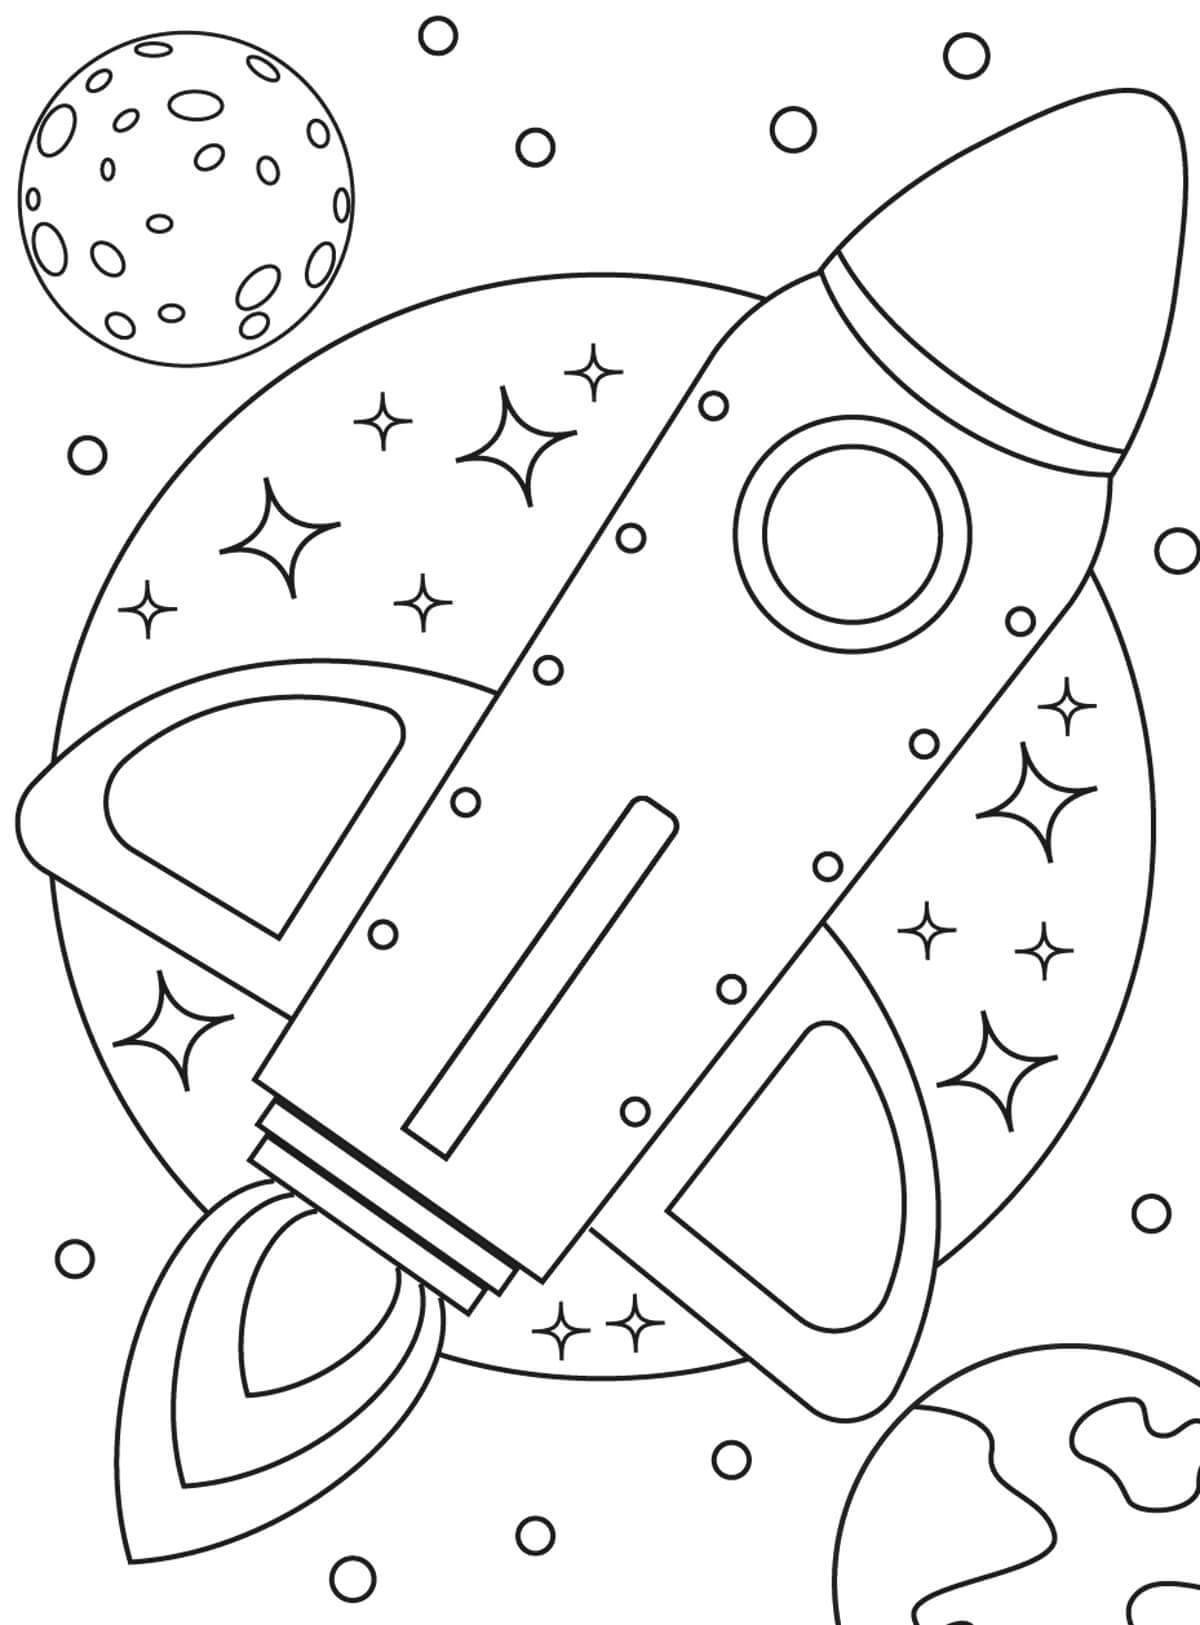 Раскраска про космос для детей 3 лет. Космос раскраска для детей. Космос раскраска для детей 4 лет. Раскраска. В космосе. Детские раскраски космос.